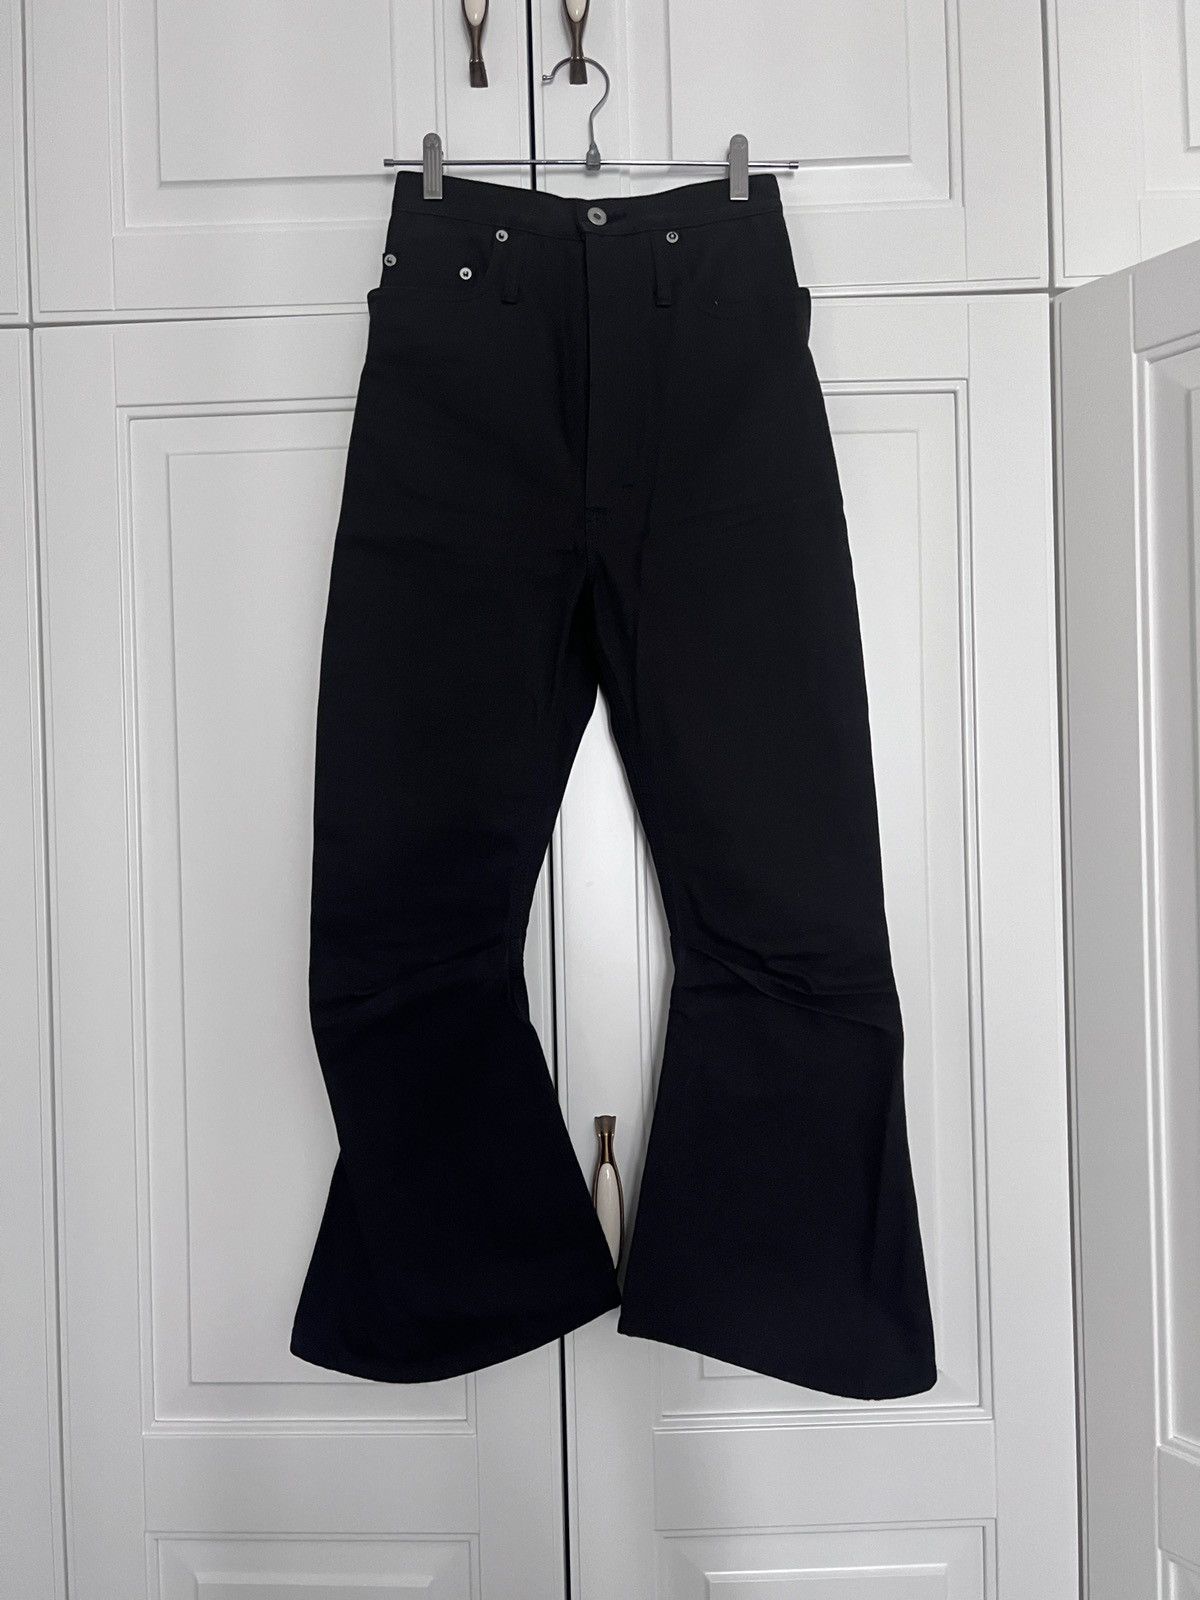 Kozaburo 3D bootcut jeans | Grailed